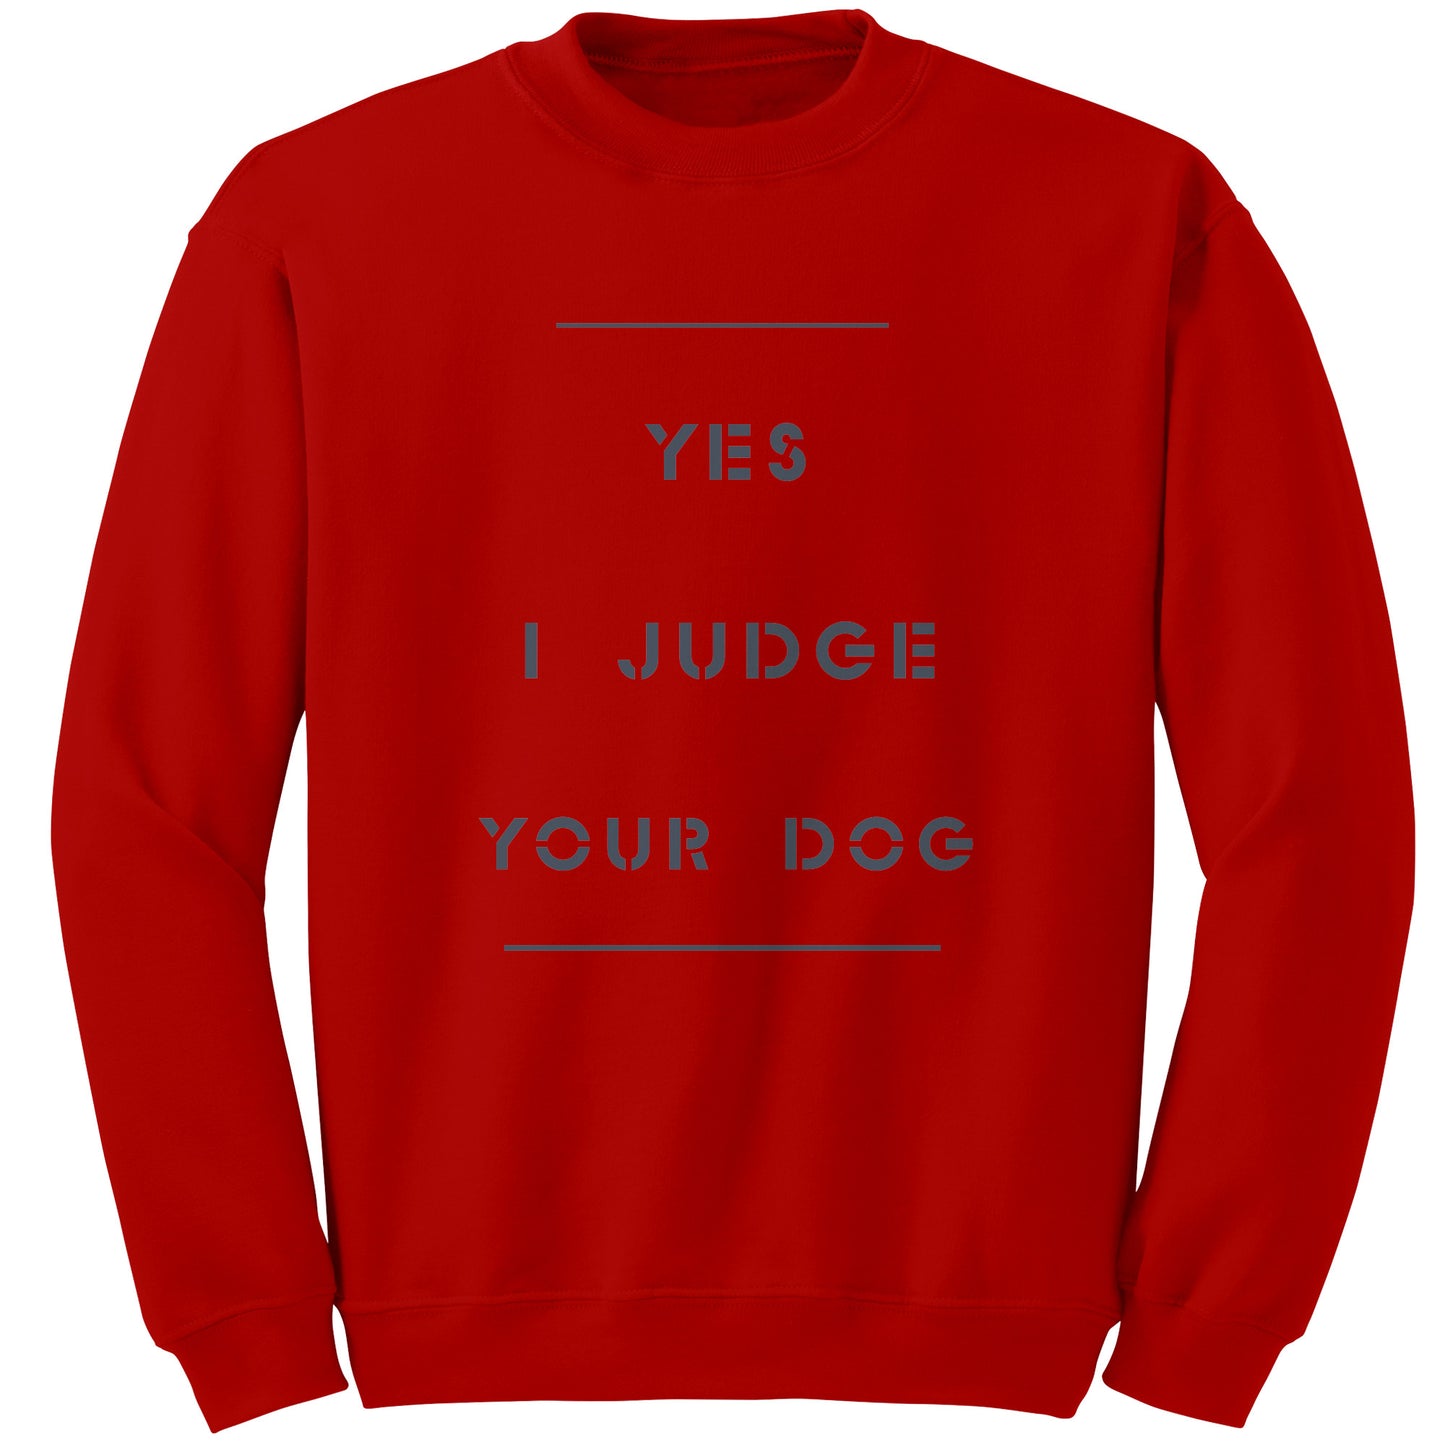 Yes I Judge Your Dog   permium Long sweatshirt